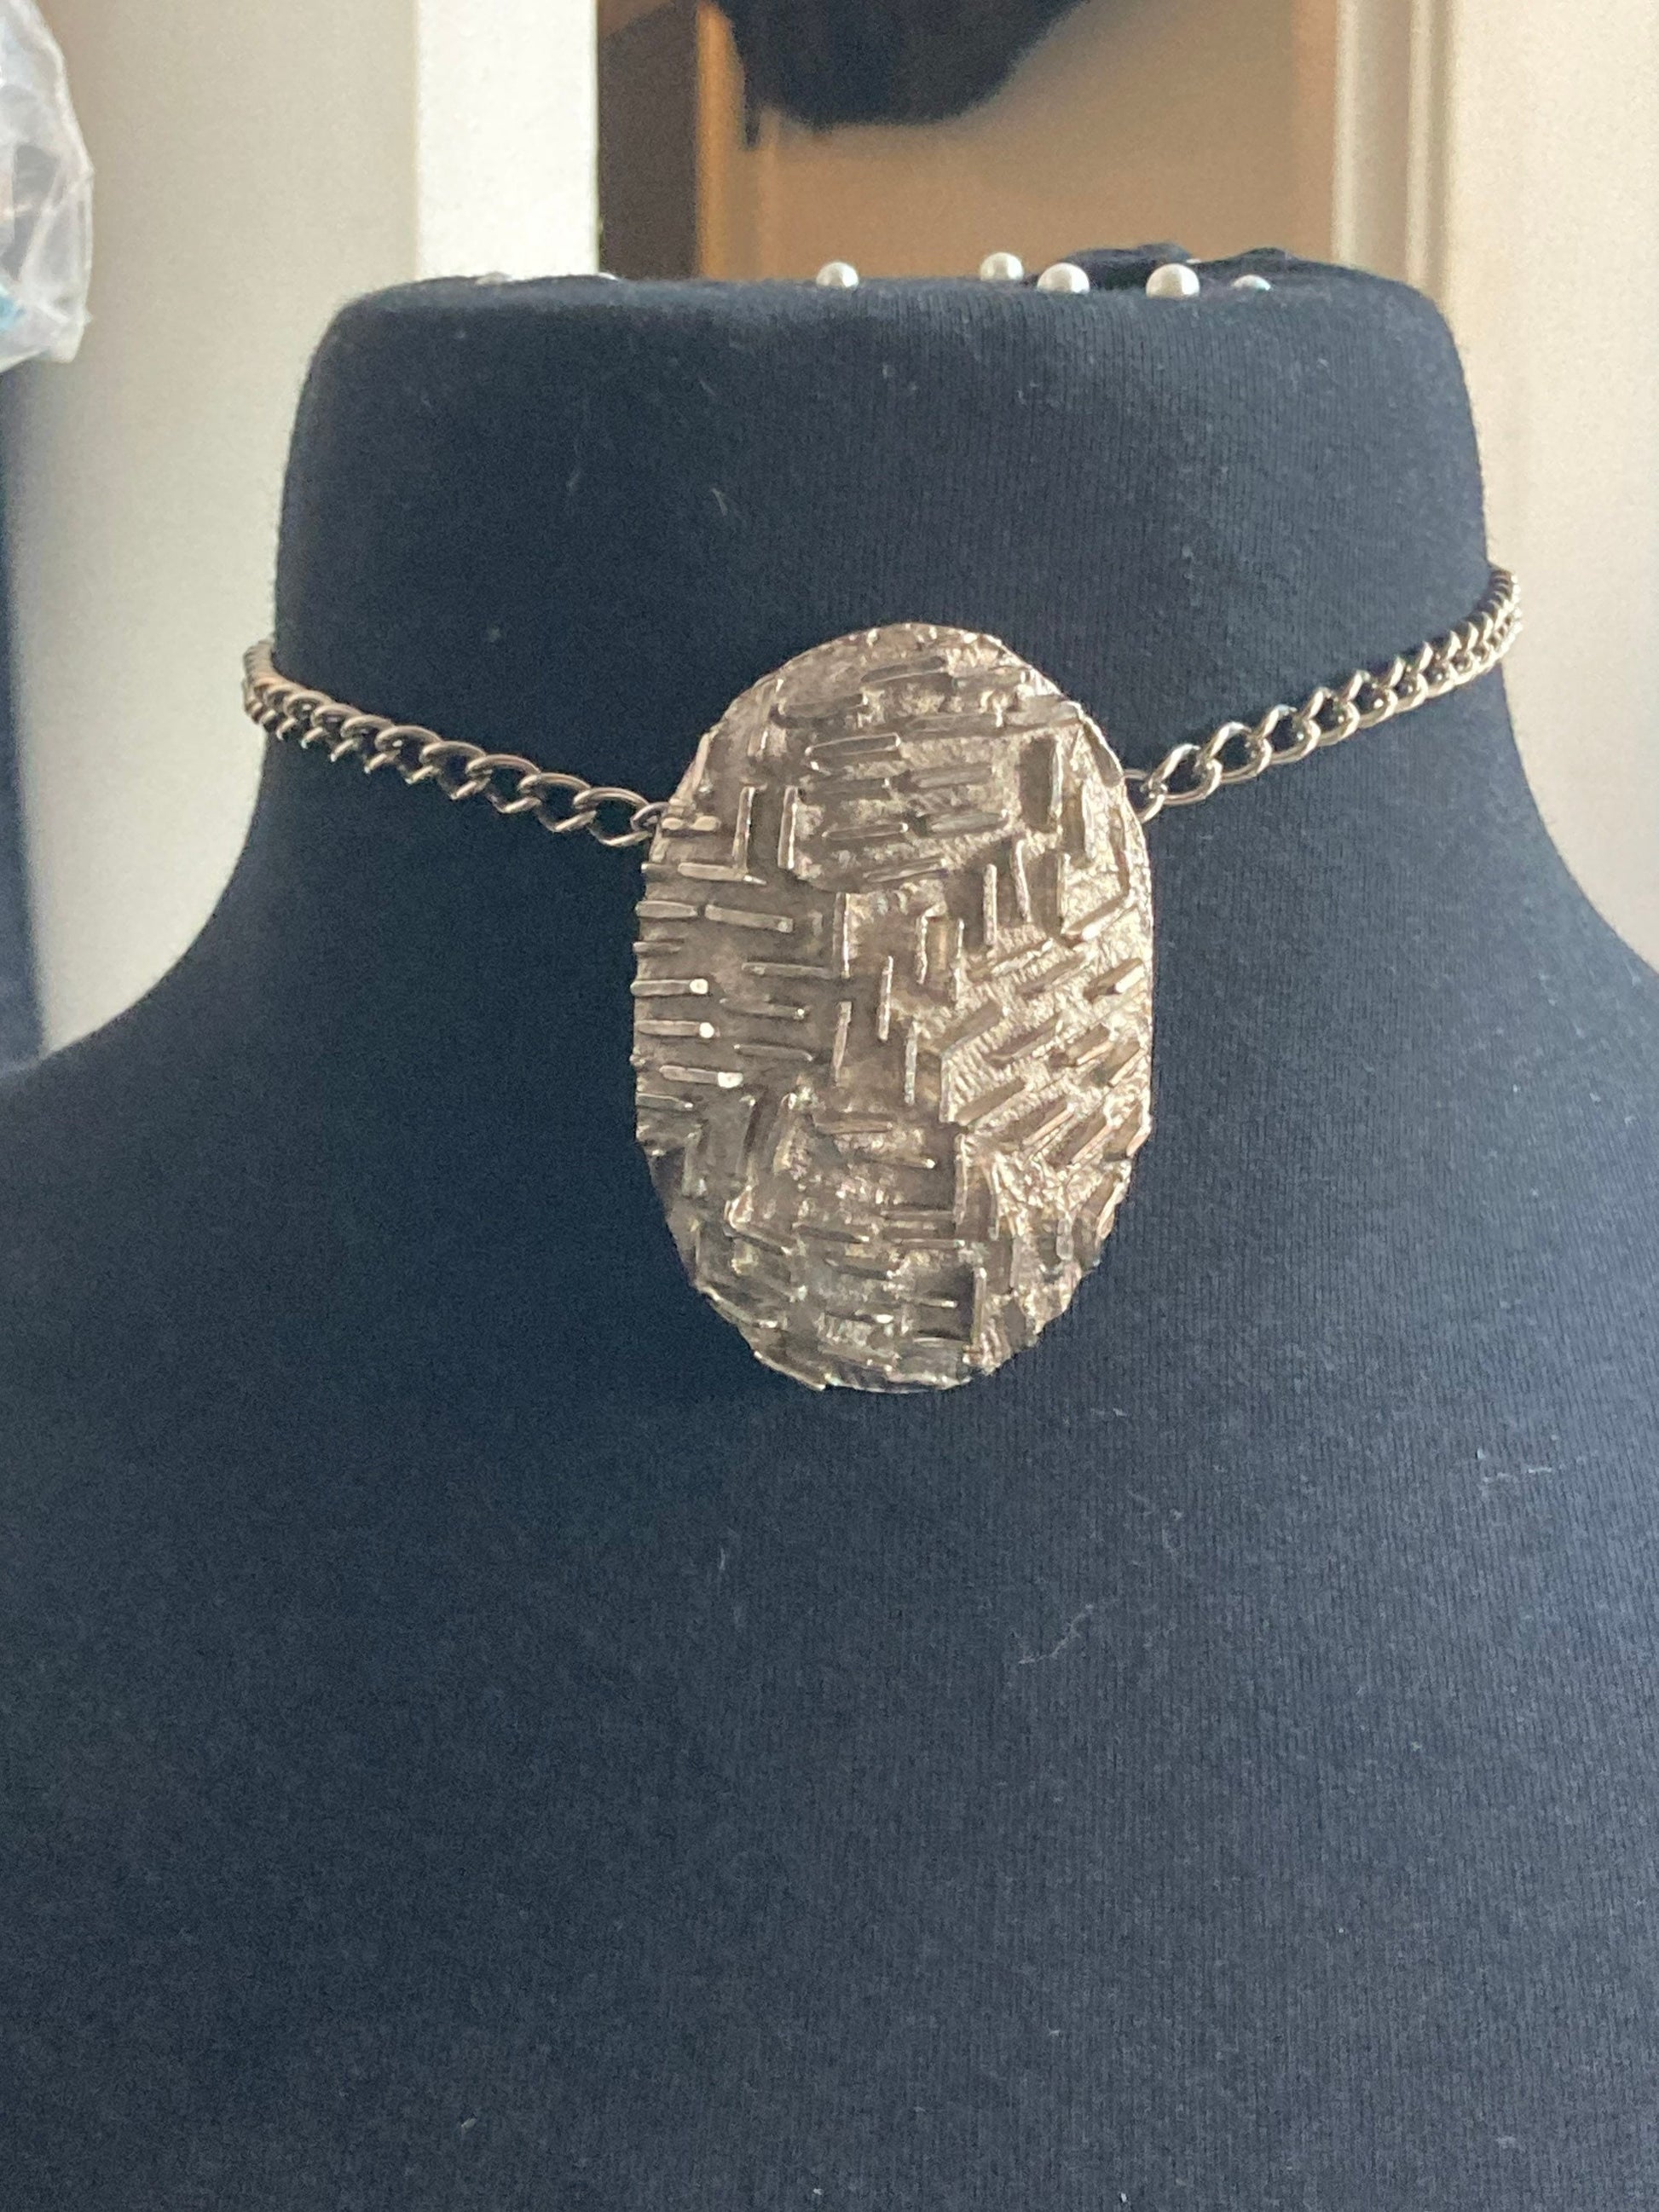 Vintage Modernist brutalist oval textured pendant drop or choker necklace